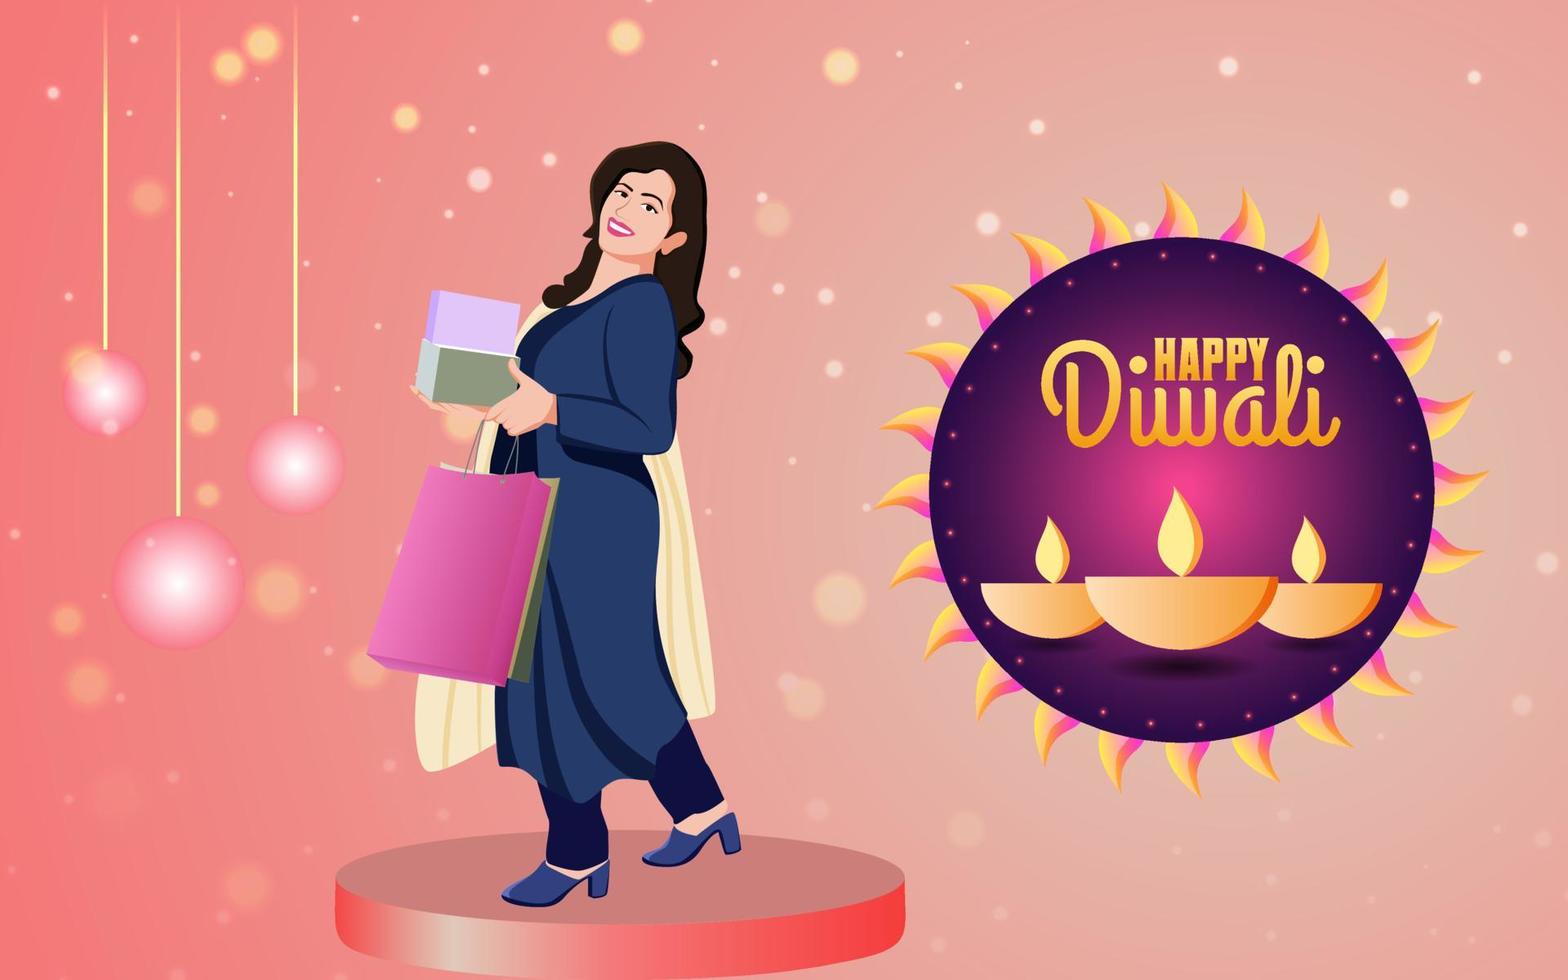 Indiase vrouwen met boodschappentas en dozen op creatieve gelukkige diwali-achtergrond, gelukkige diwali-illustratie voor verkoopbanner en sociale media-promotieachtergrond. met gelukkige diwali-typografie. vector